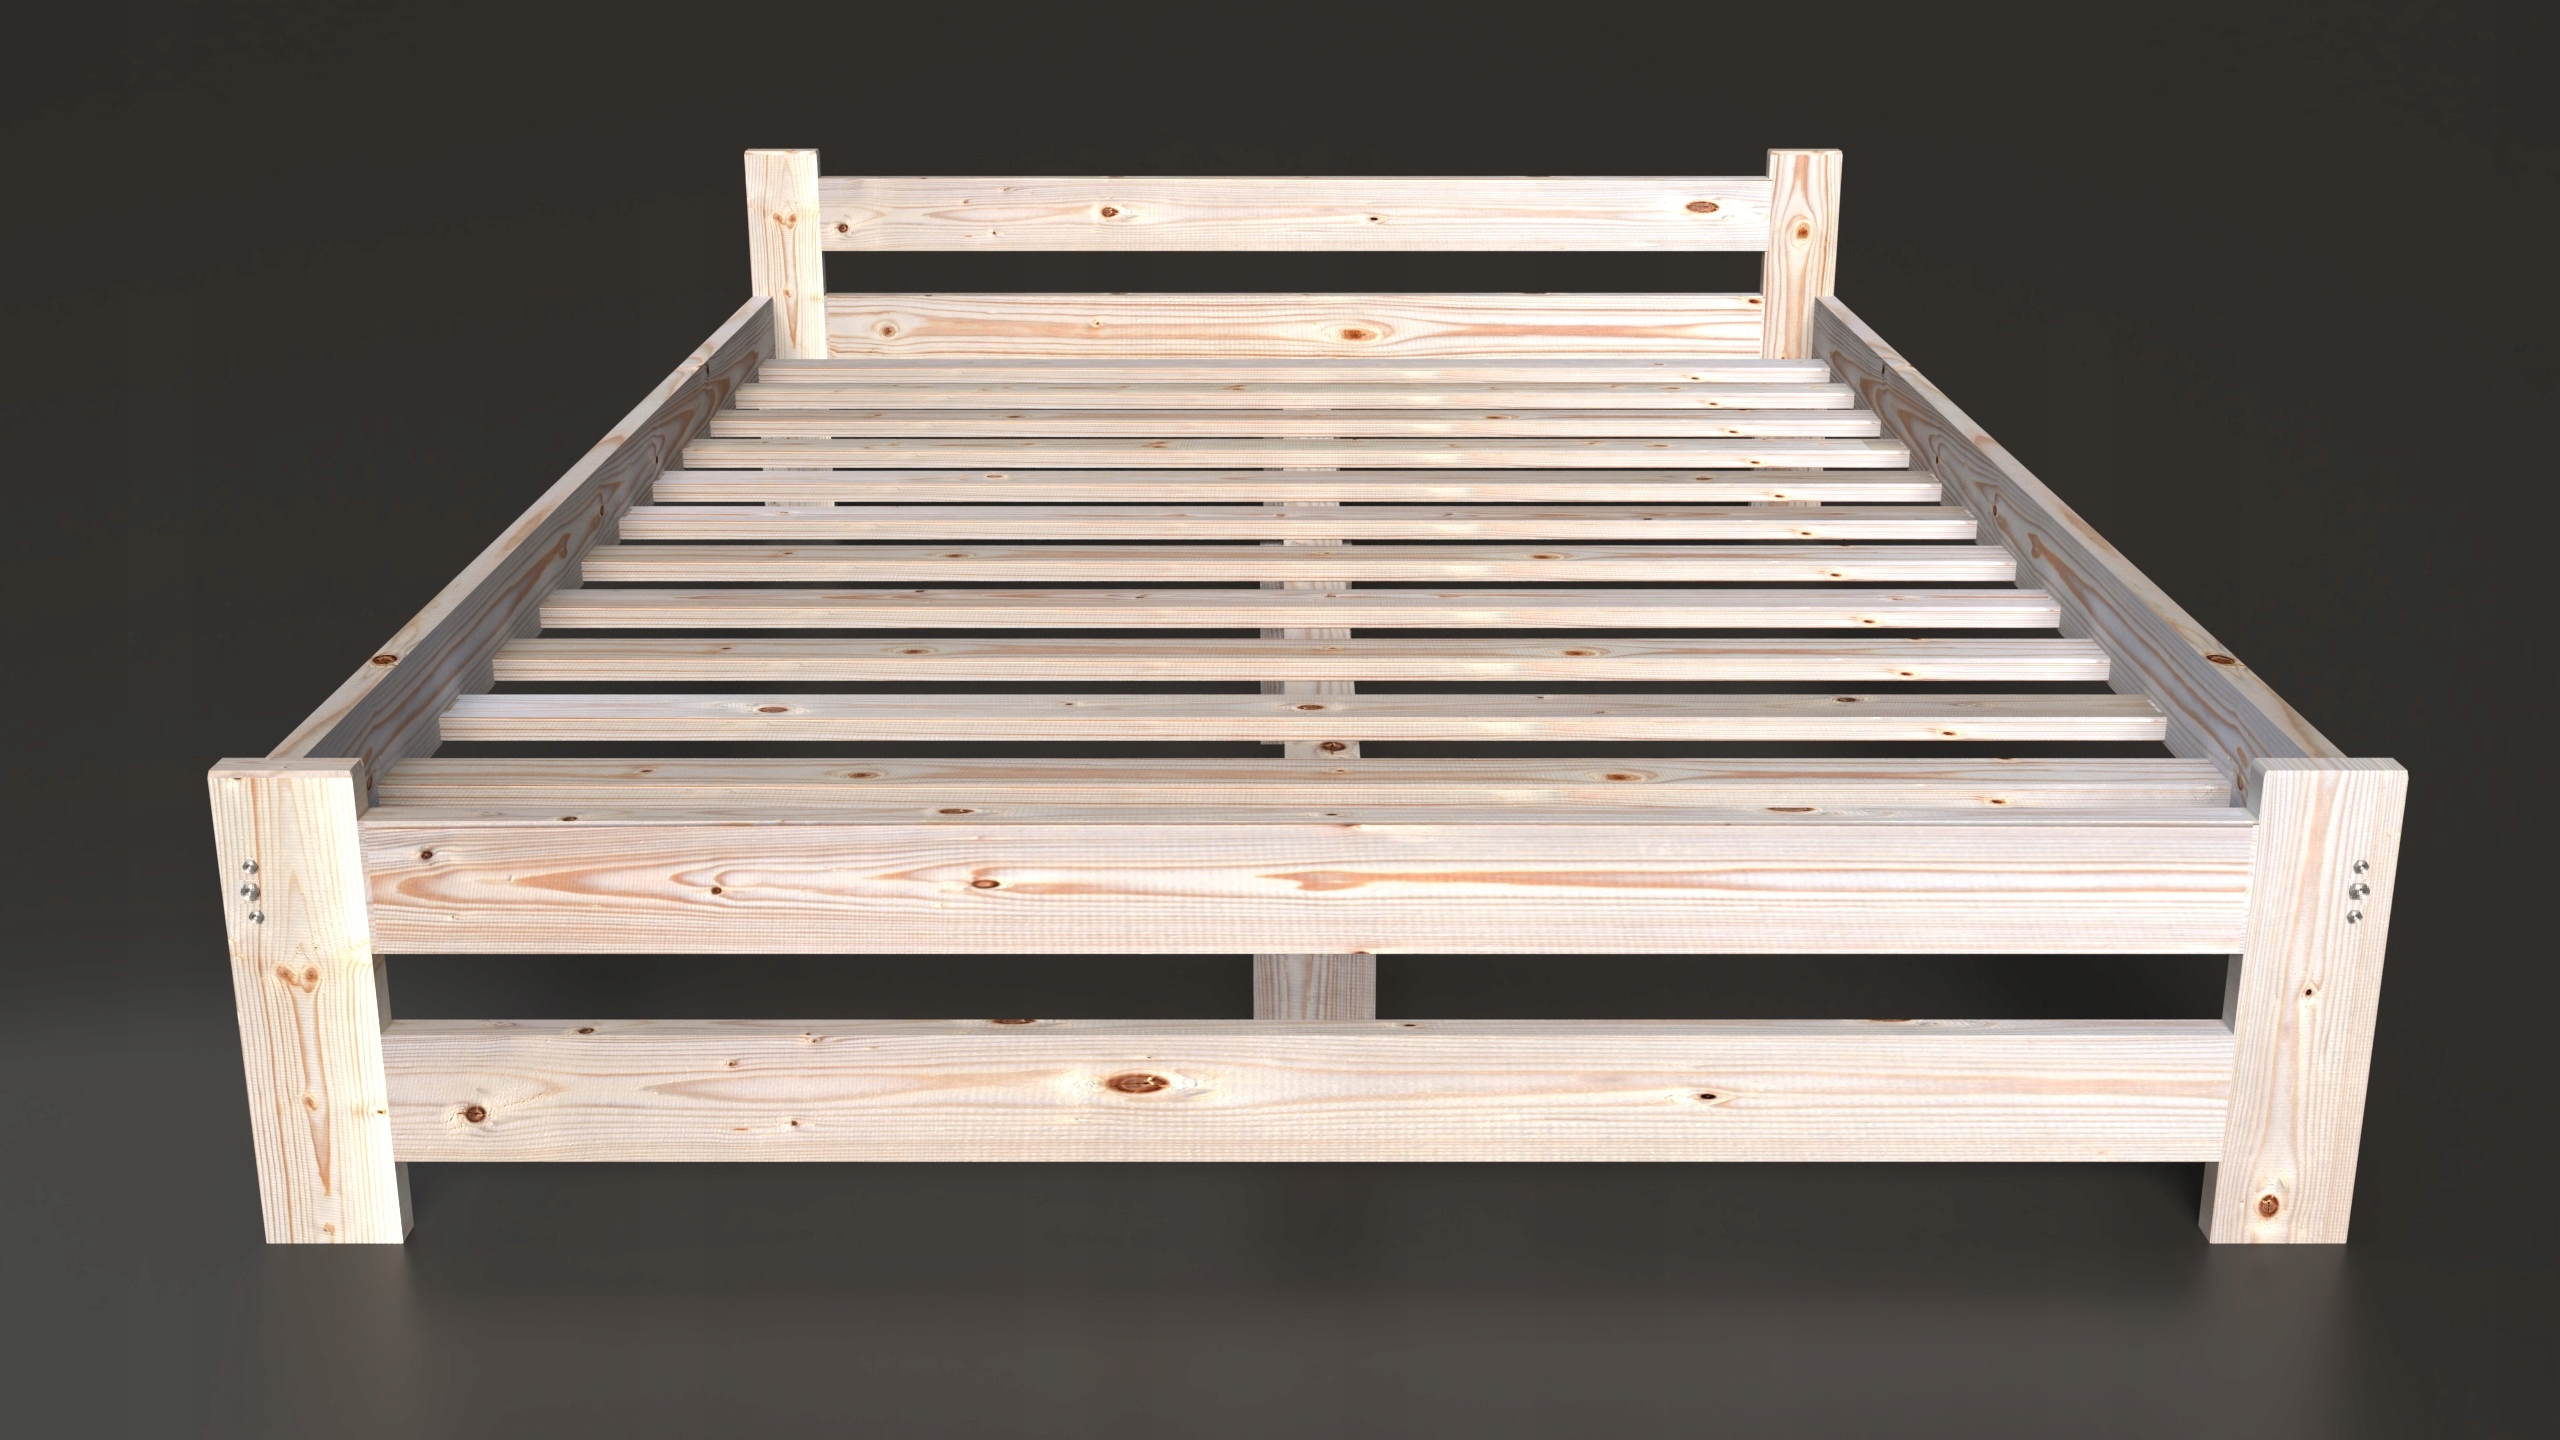 вес двуспальной деревянной кровати